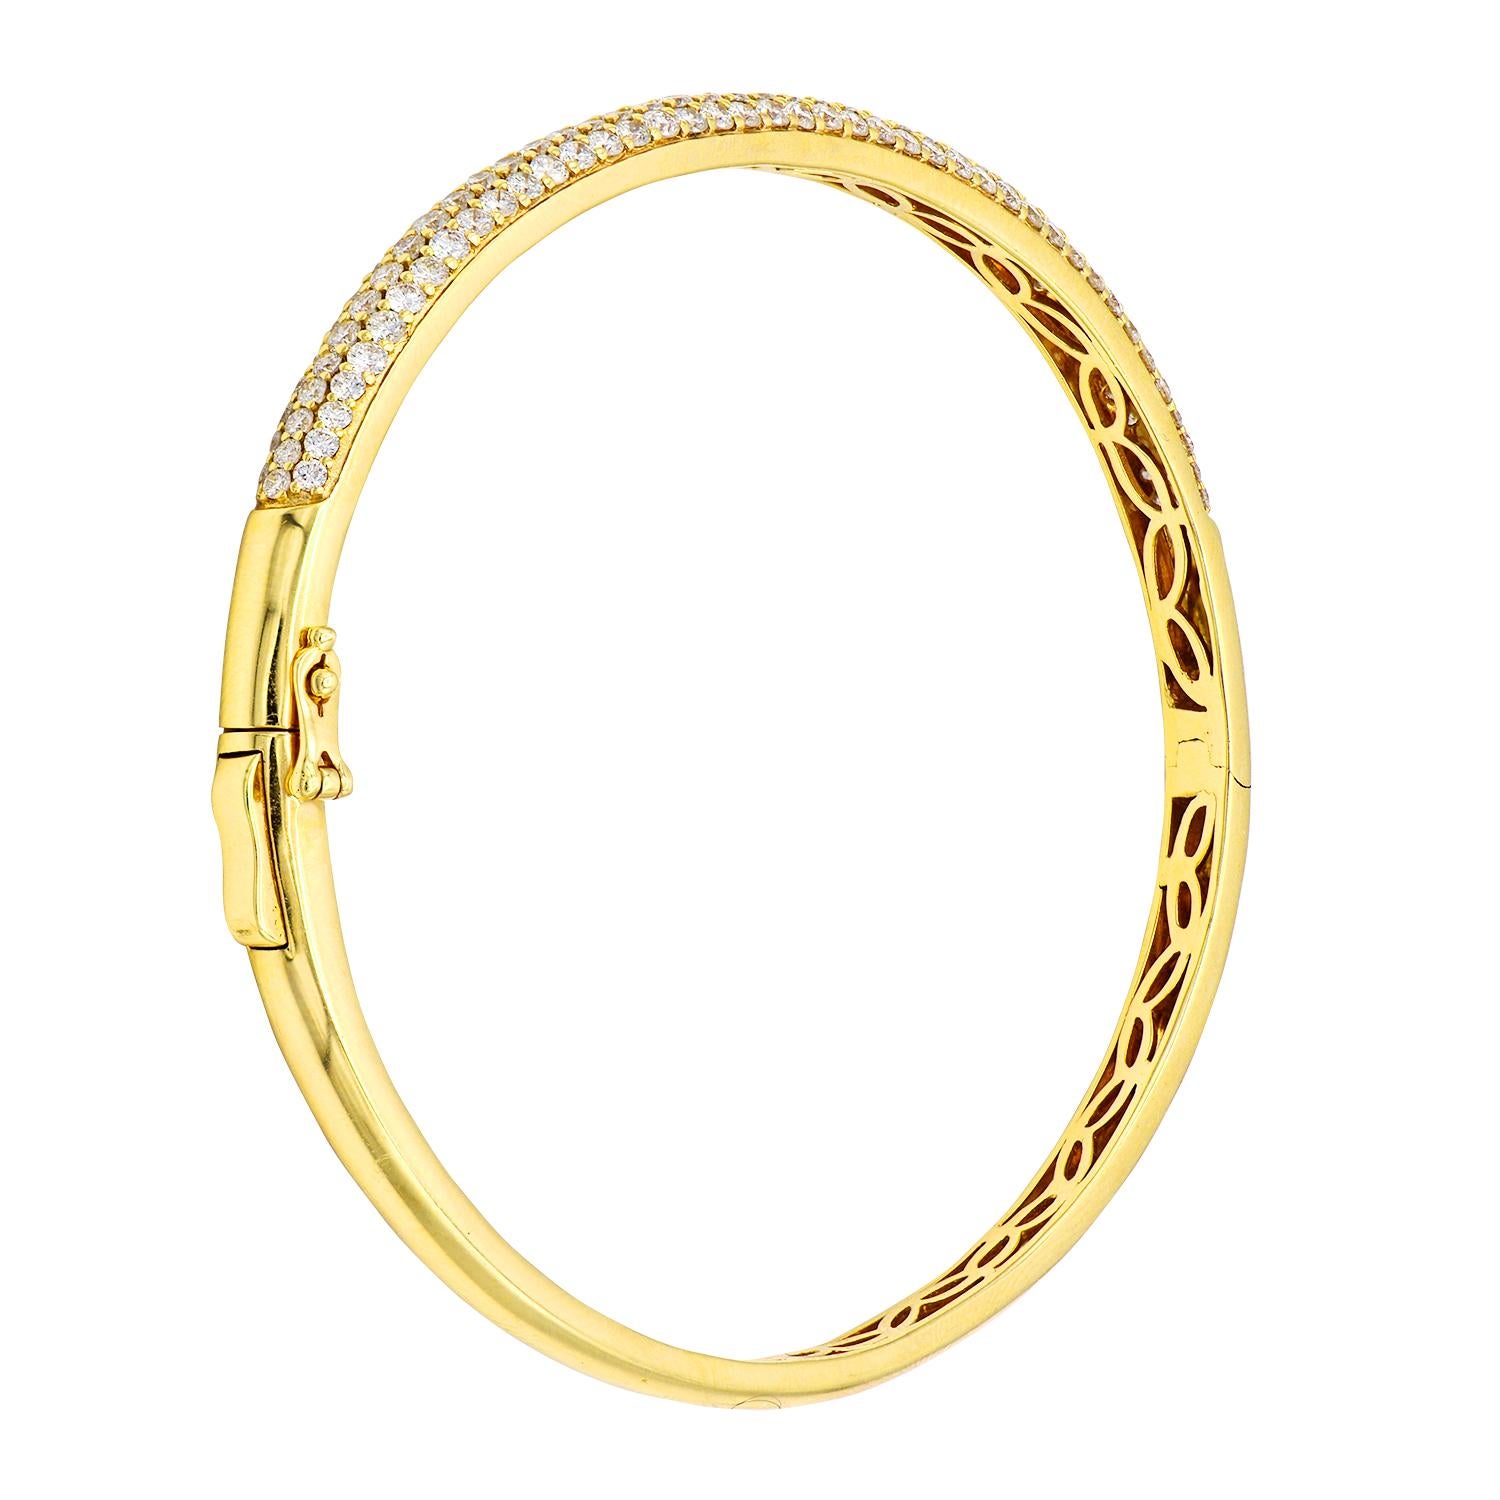 La mode et le glamour sont à l'honneur avec cet exquis bracelet en diamants. Ce bracelet en or jaune 14 carats est composé de 10,5 grammes d'or. Le dessus est orné de trois rangs de diamants de couleur SI1-0SI2, GH, composés de 127 diamants